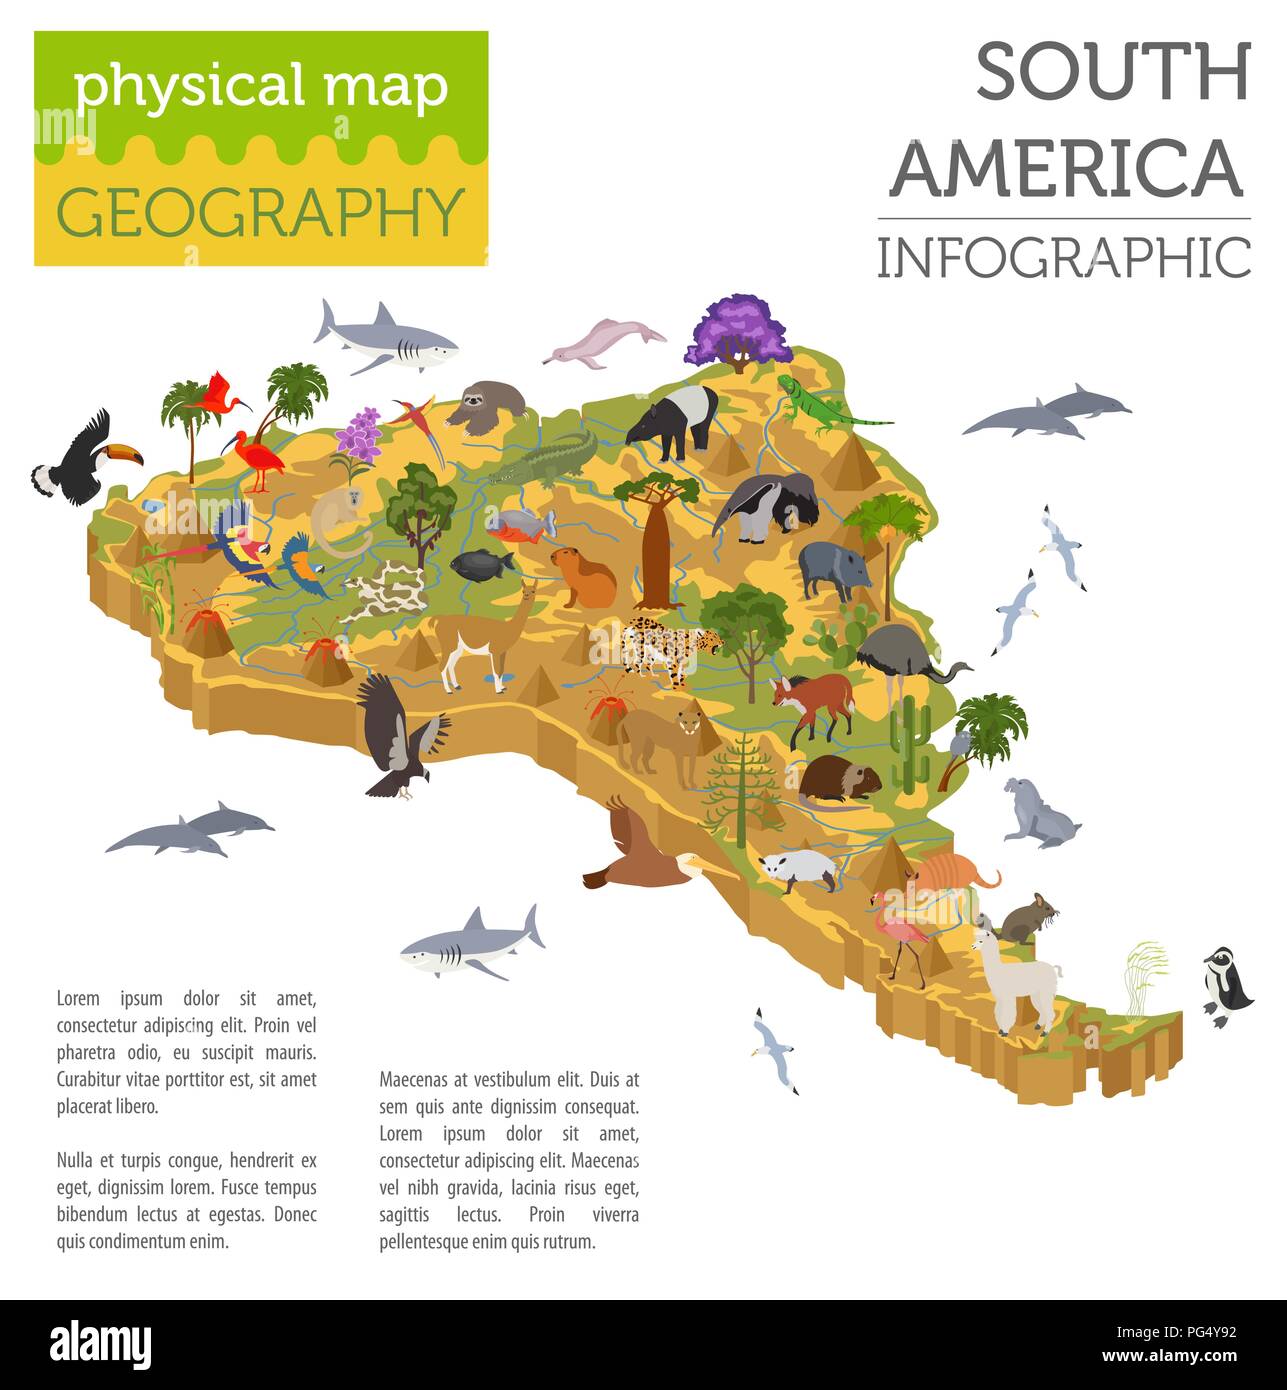 3D isométrica Sudamérica asignar elementos de flora y fauna. Animales, aves y vida marina. Construya su propia geografía infografía colección. Ilustración vectorial Ilustración del Vector